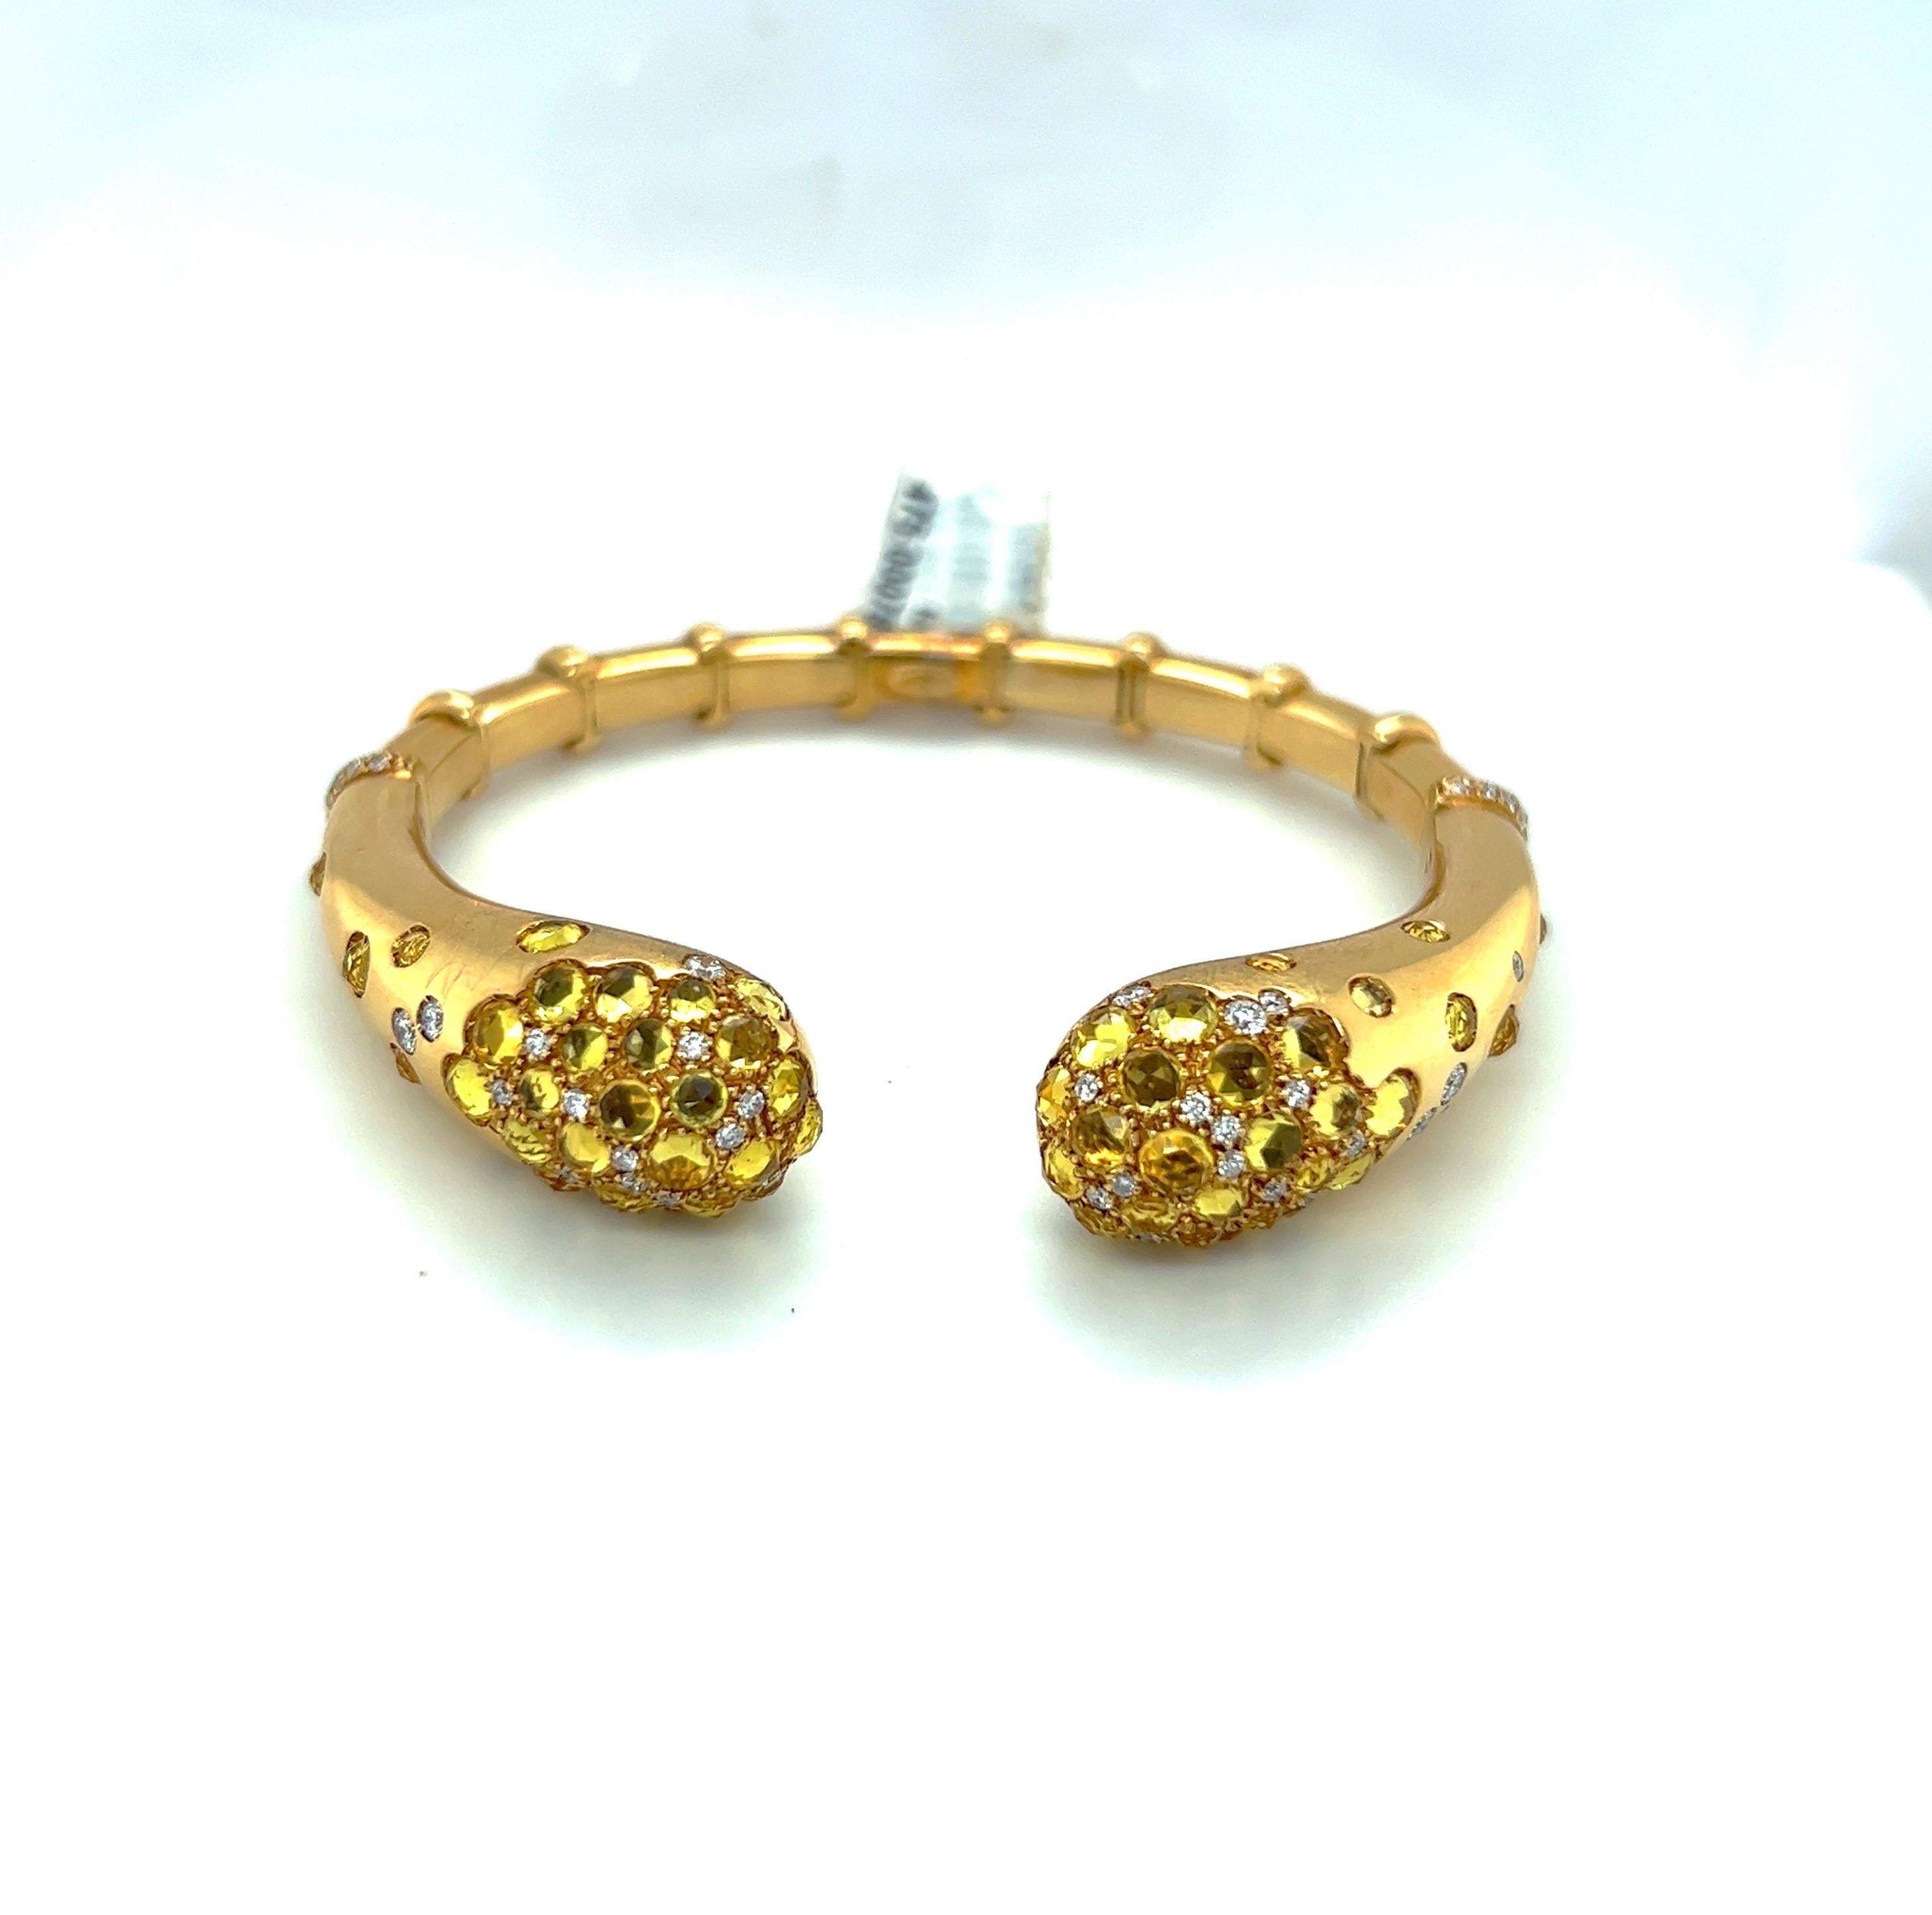 Magnifique bracelet en or jaune 18 carats conçu par g. Verdi d'Italie pour Cellini NYC. Le bracelet ouvert est serti de 8,58 carats de saphirs jaunes taillés en rose et de 0,89 carats de diamants ronds de taille brillant. La mesure intérieure est de